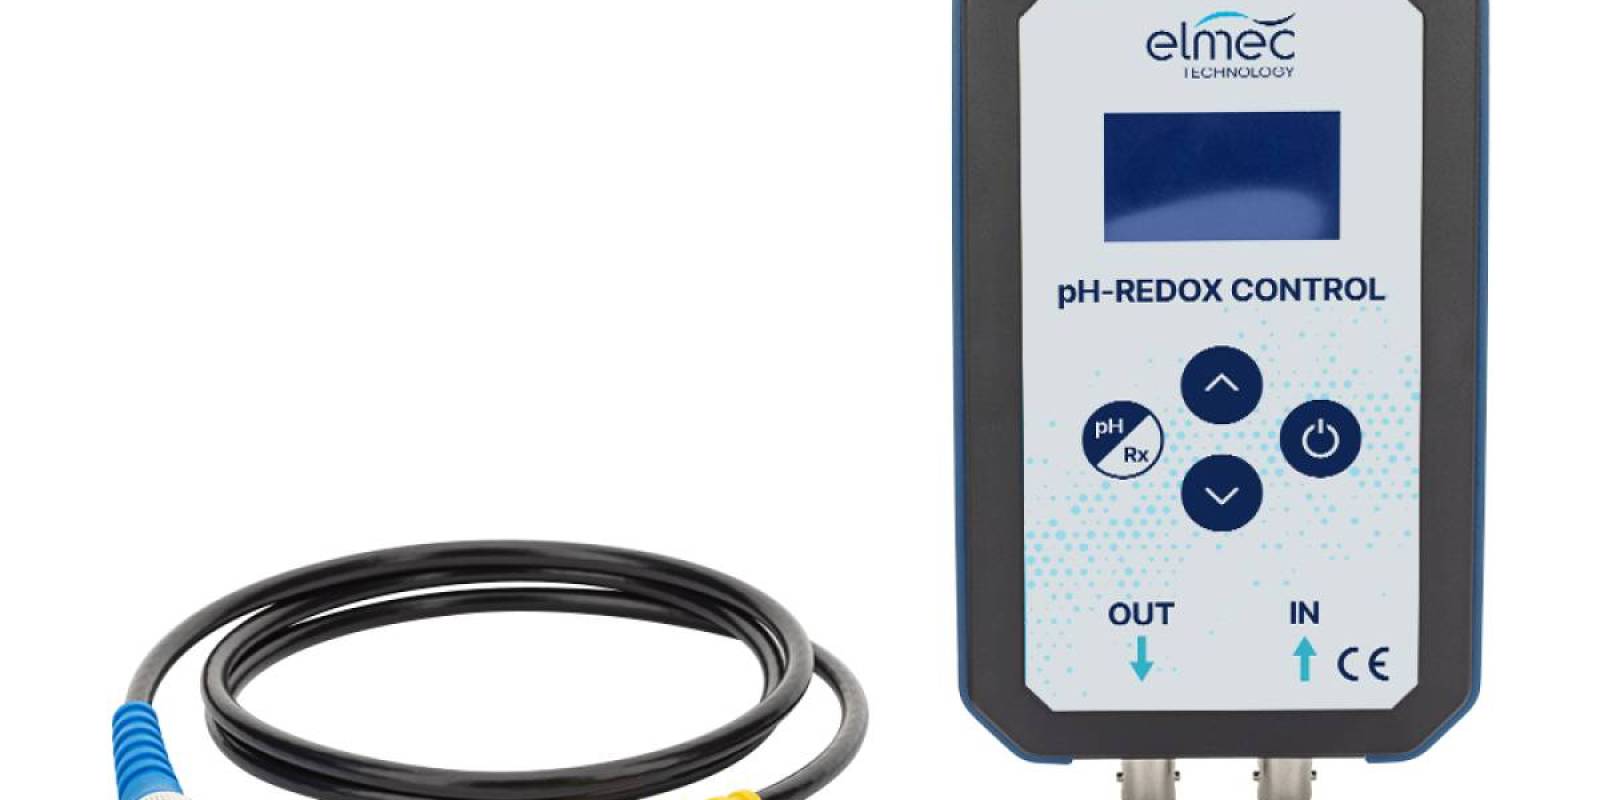 El nuevo Simulador Elmec Technology pH/REDOX CONTROL ya disponible en el mercado europeo